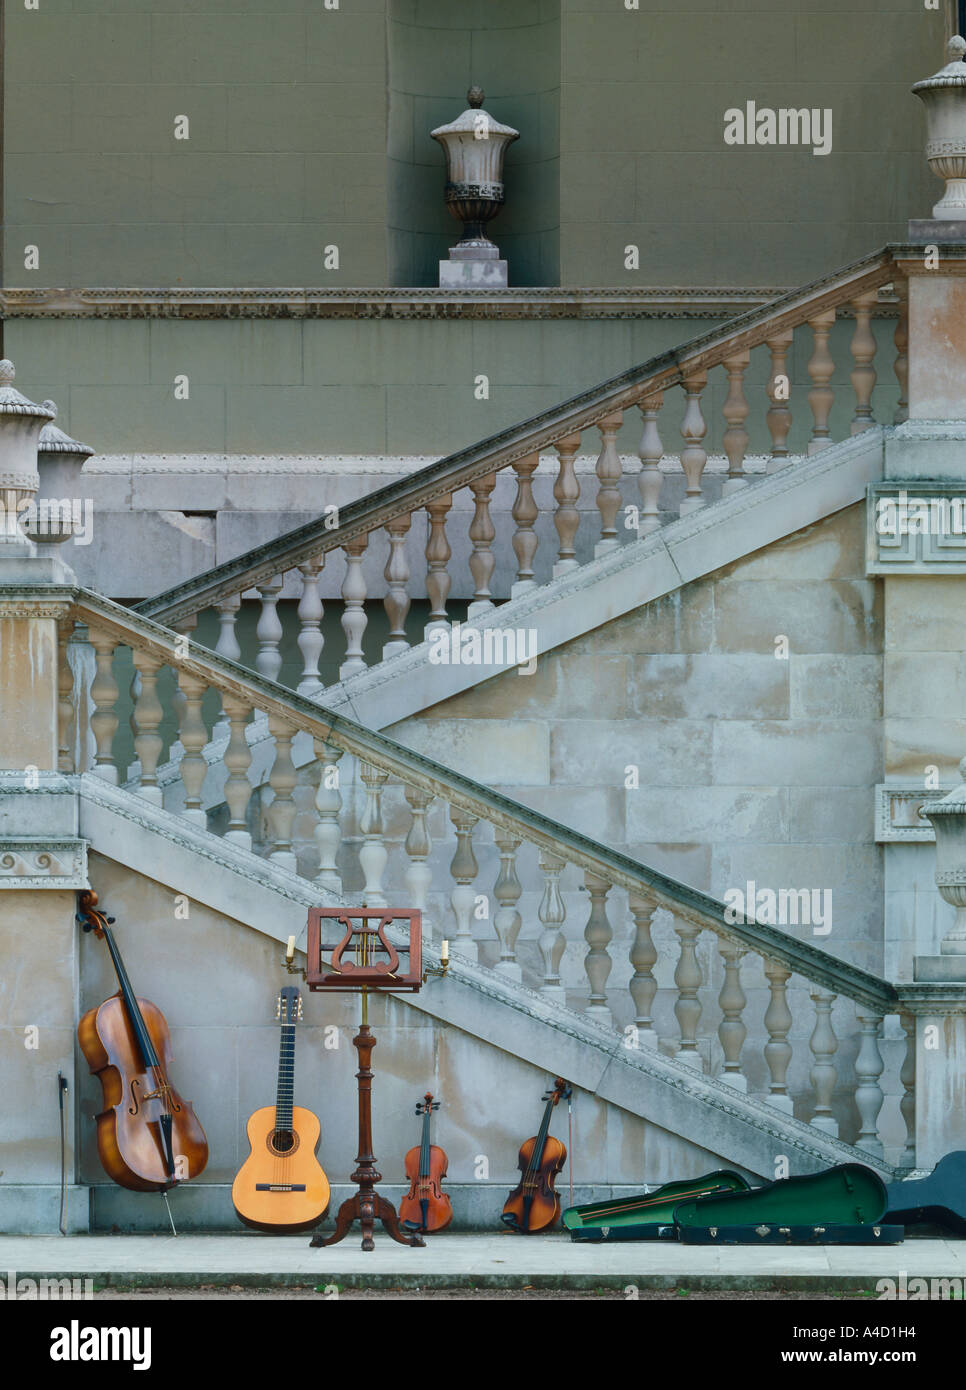 Gitarrenquartett: Cello, Gitarre, Violine und Viola, am Fuße des steinernen Ballustrade des 18. Jahrhunderts Chiswick House. Stockfoto